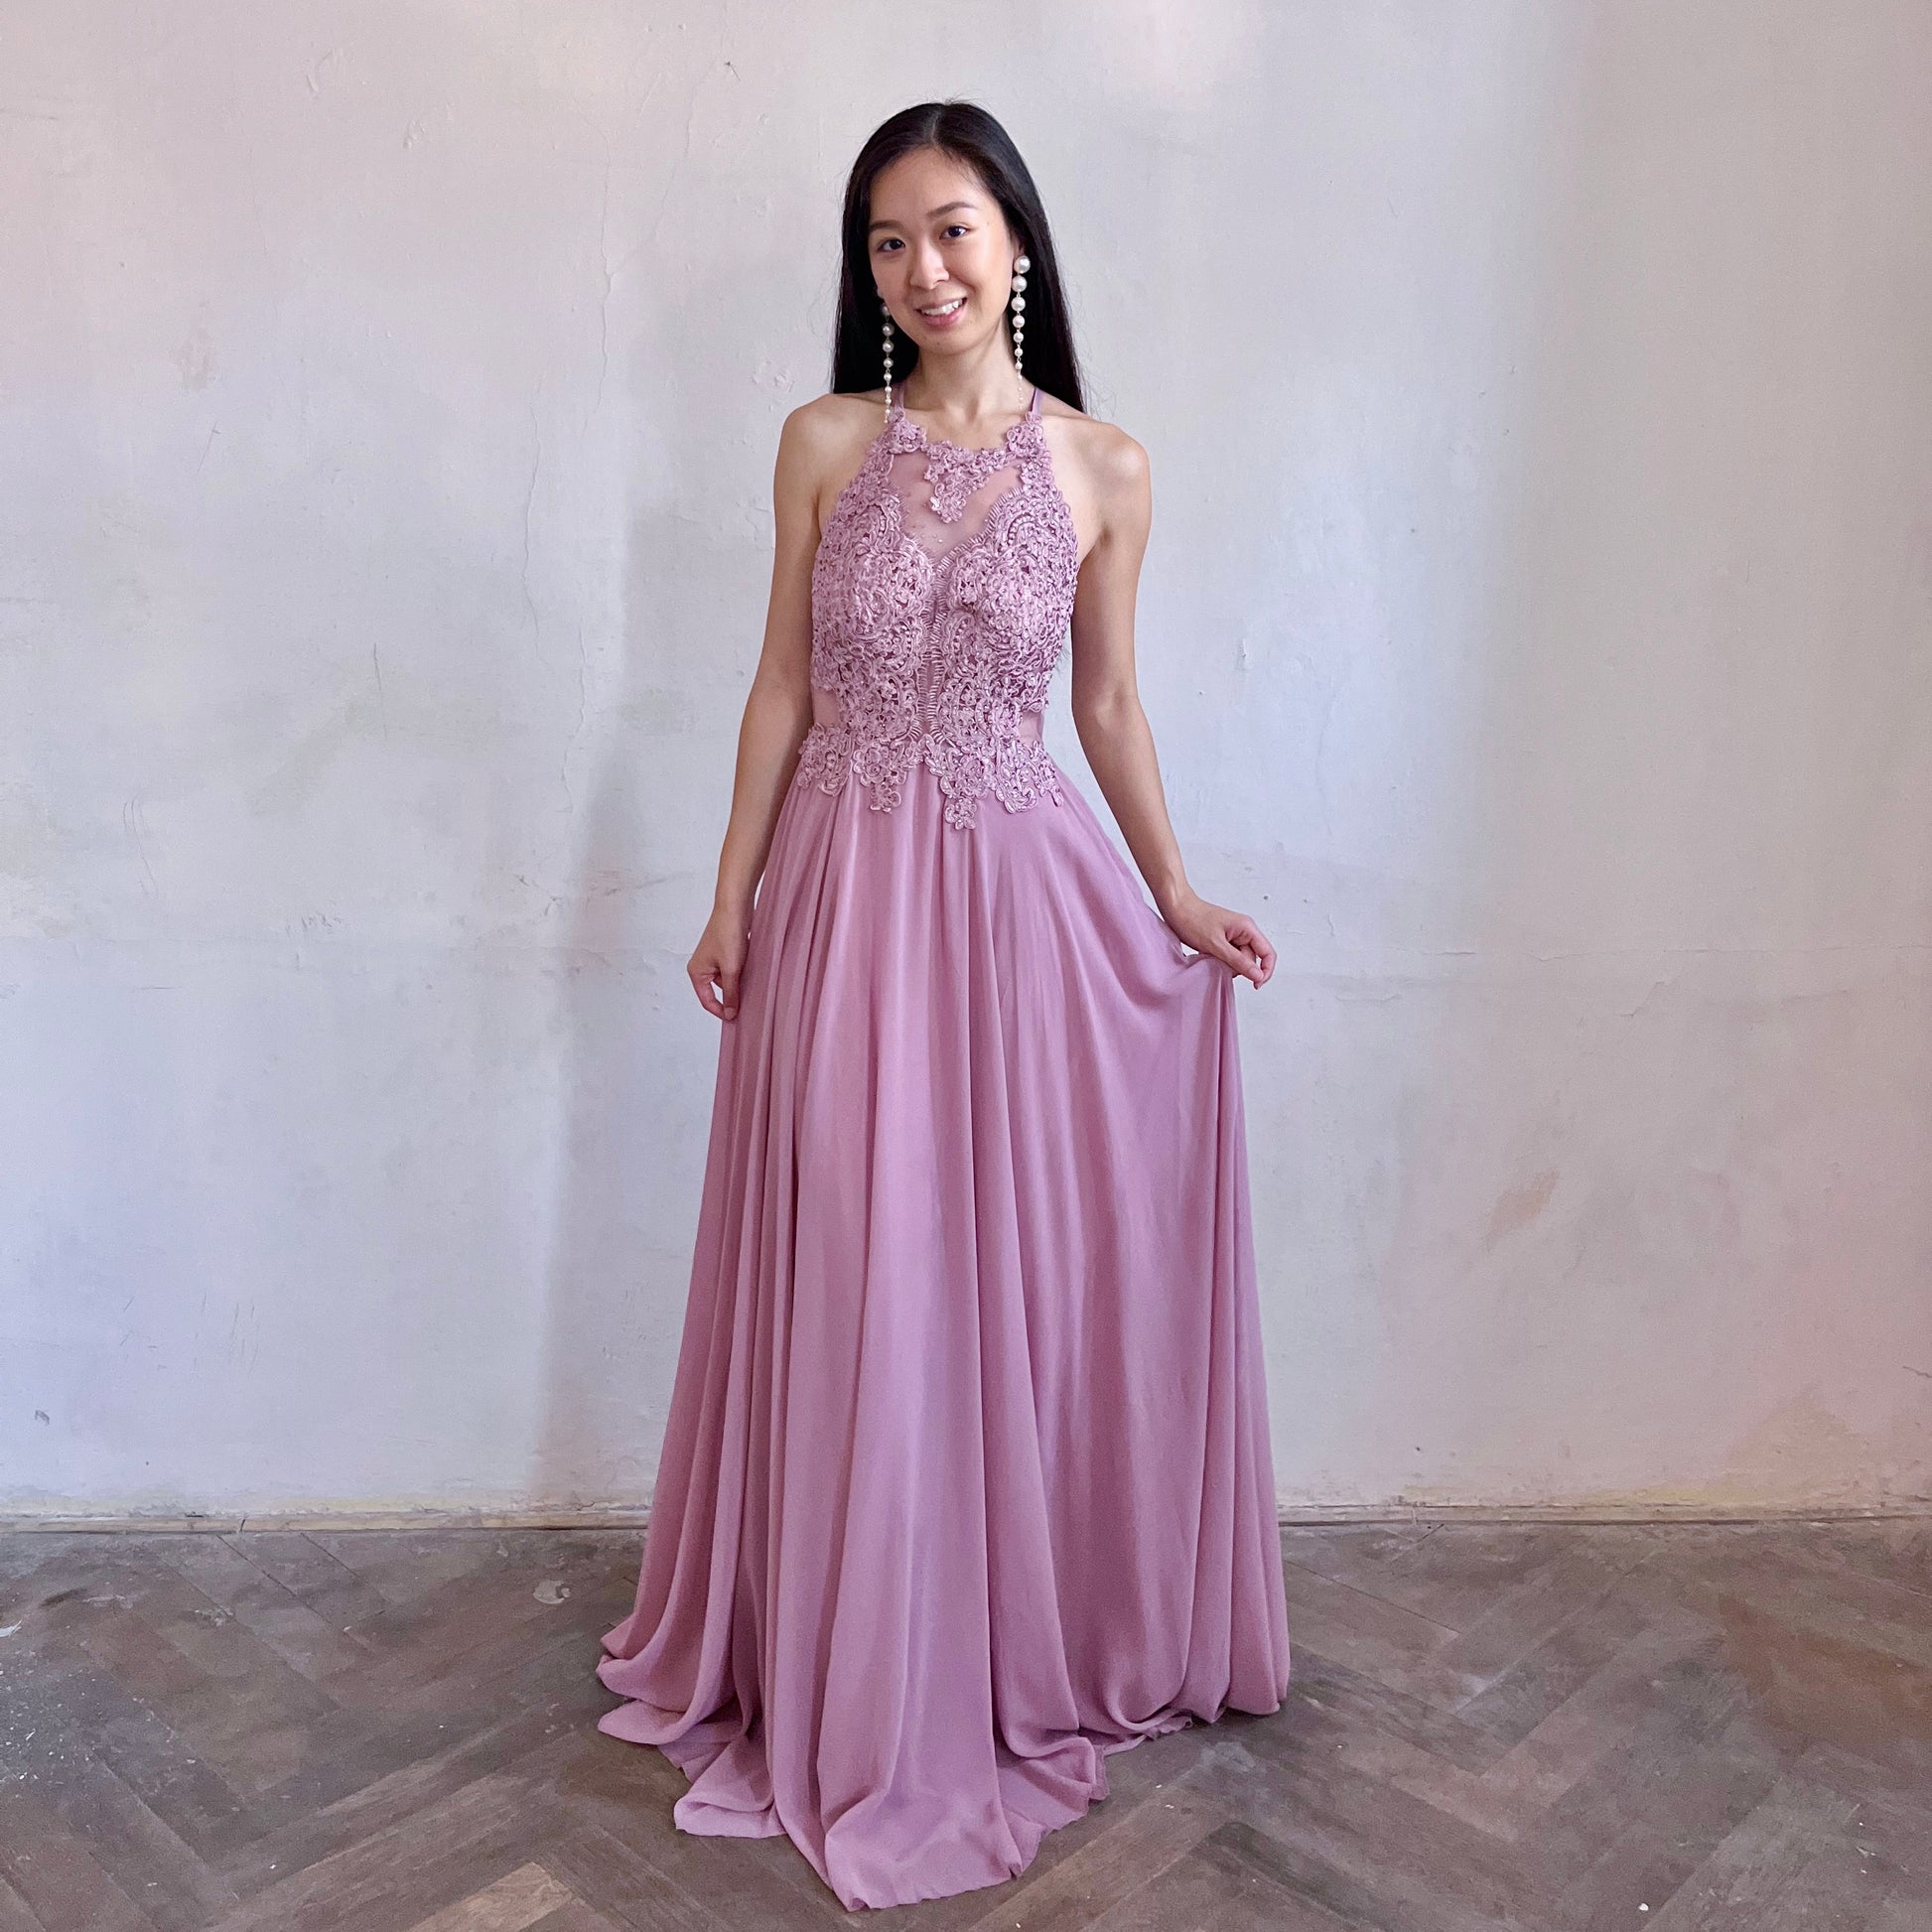 Modelka asijského původu pózující zepředu oblečená ve starorůžových krajovaných společenských šatech